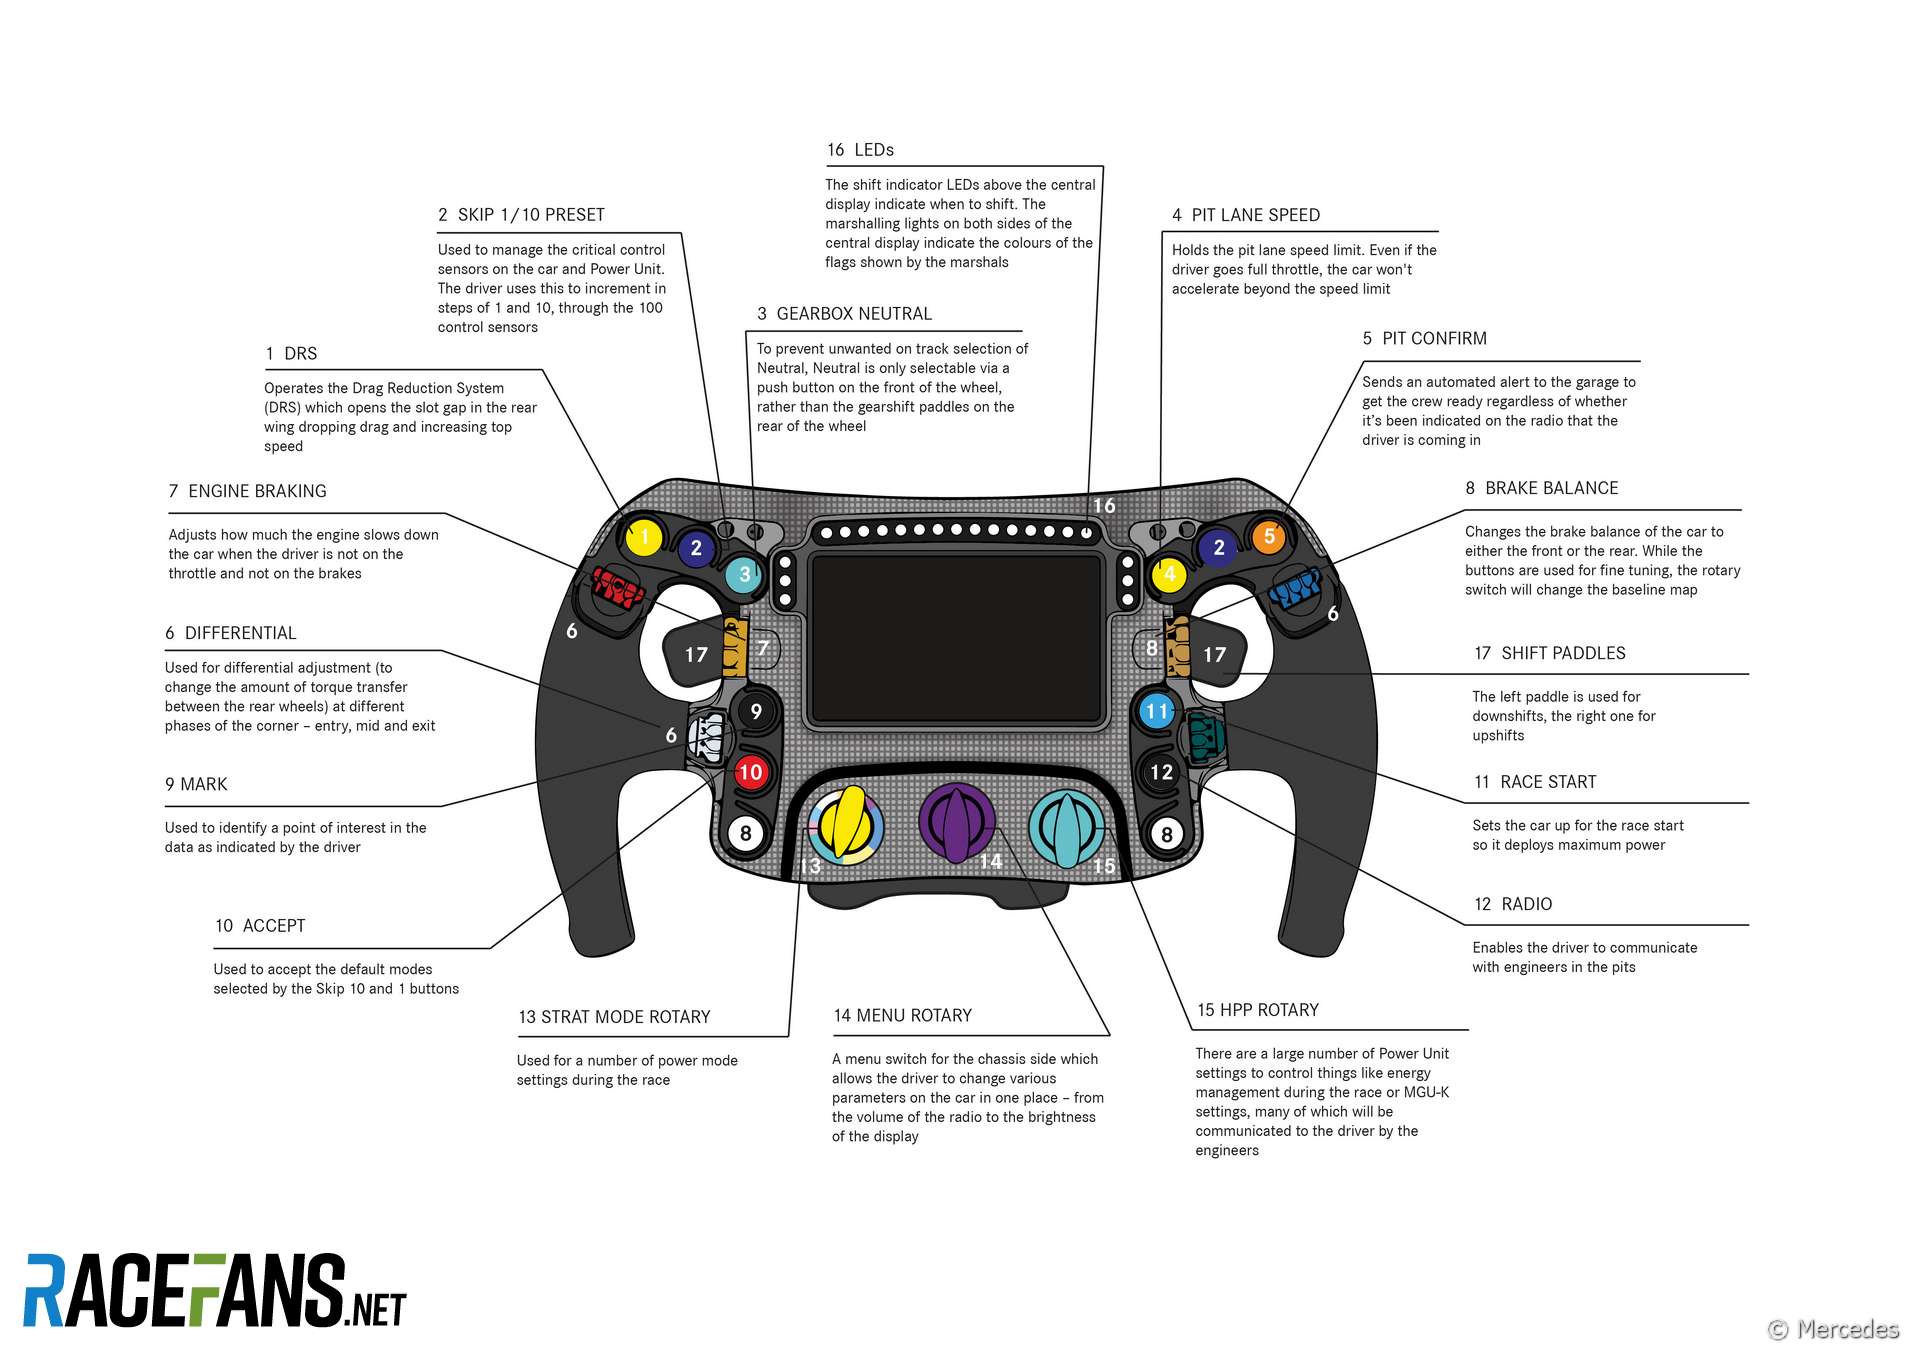 Mercedes W10 2019 F1 steering wheel guide